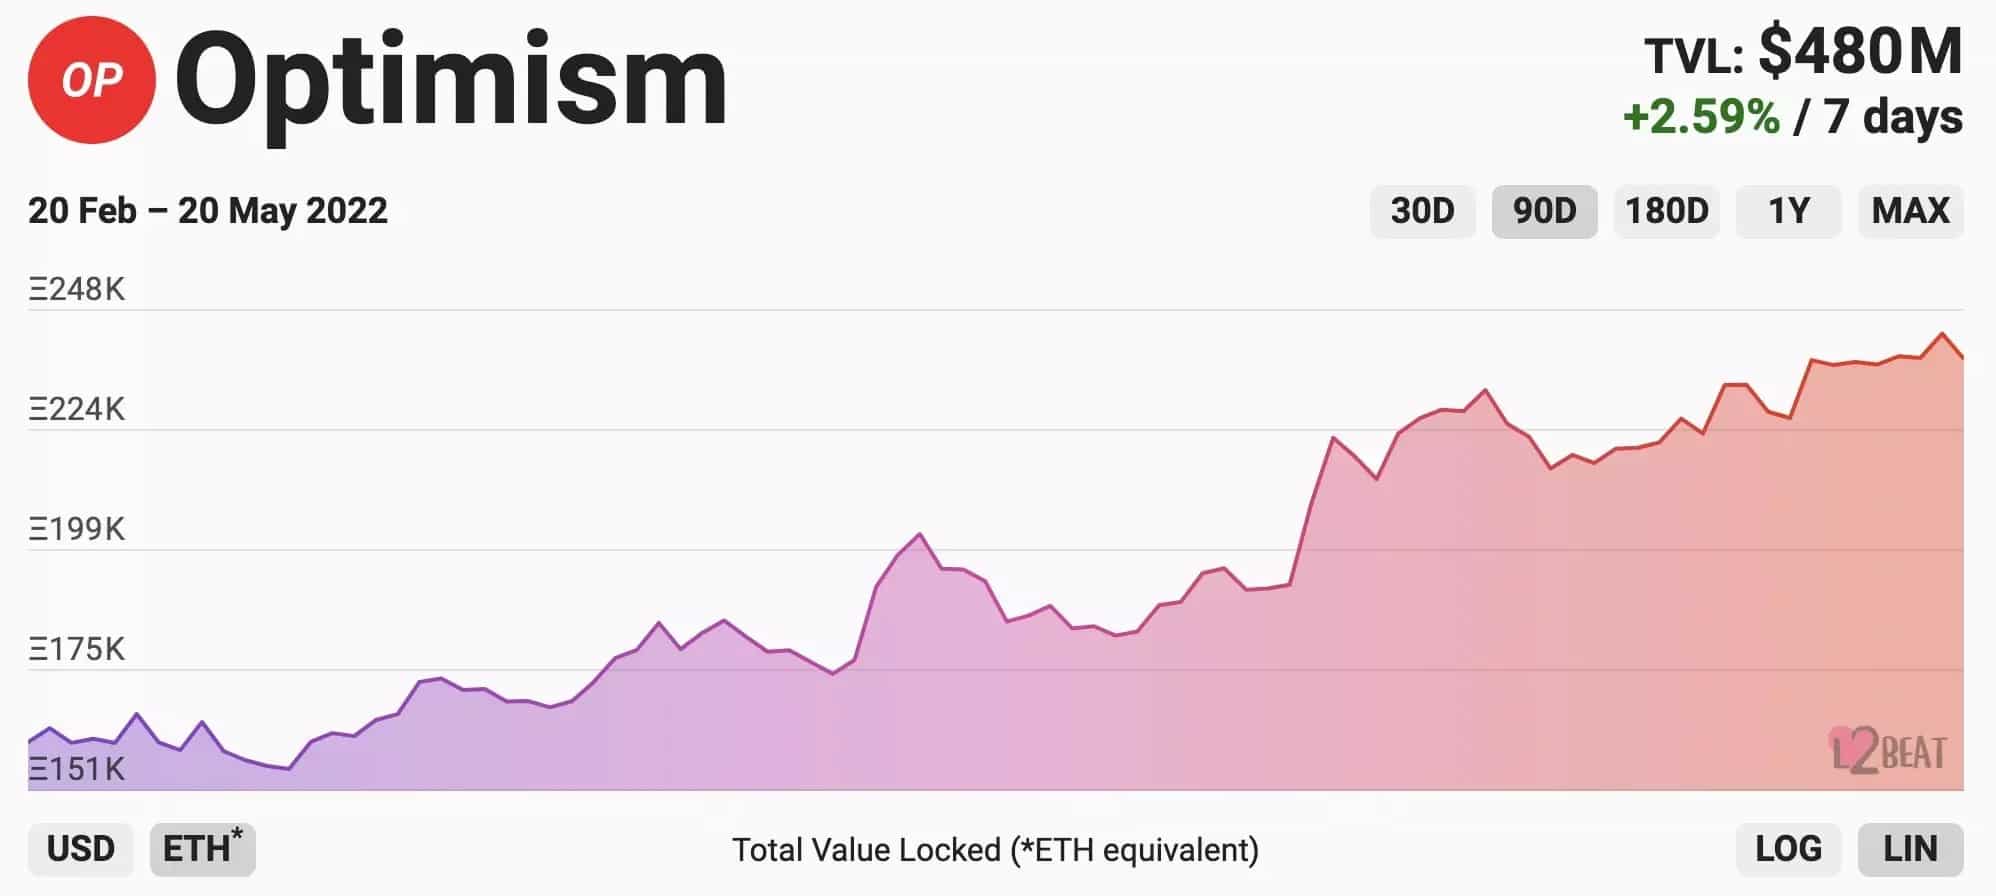 Figure 2: Total Value Locked (TVL) on Optimism